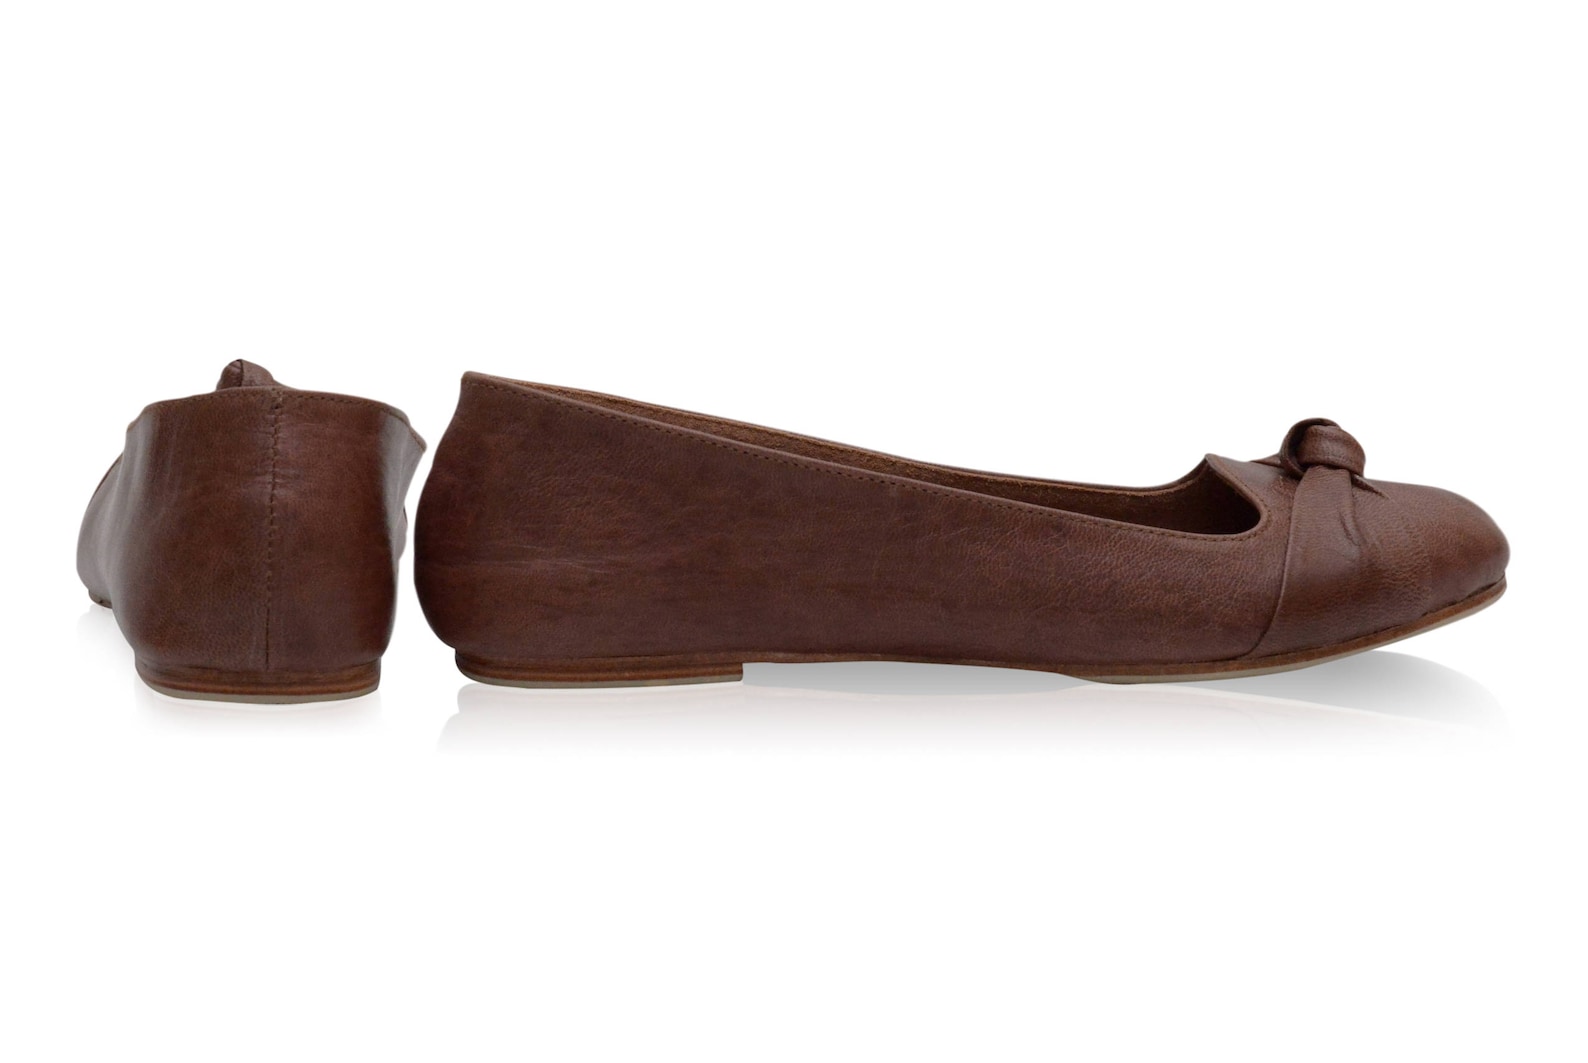 sale. sz. 8. panama. brown shoes size 8 / leather ballet flats size 8 / women shoes size 8 / brown leather flats size 8